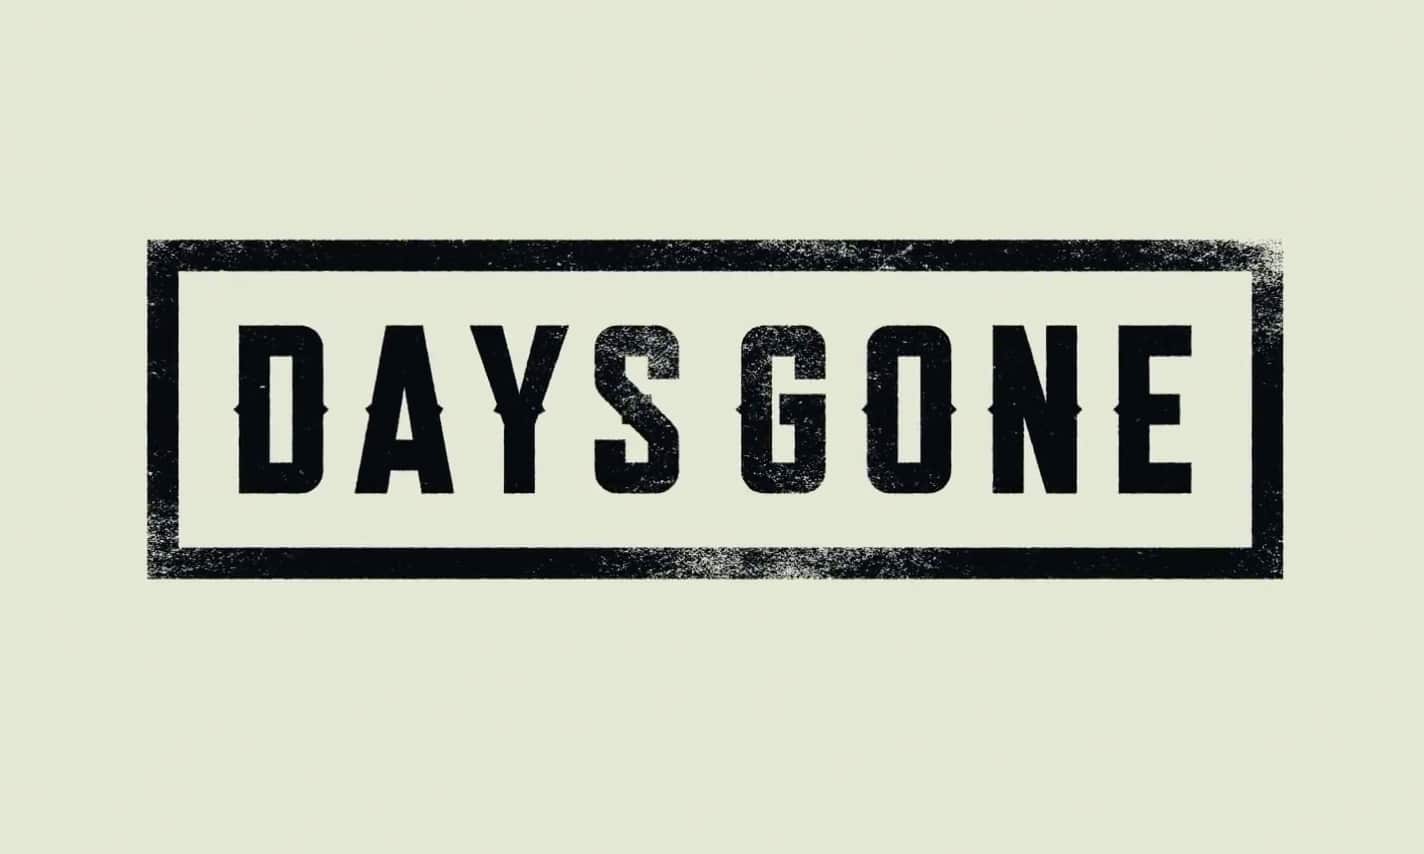 Days Gone Logo